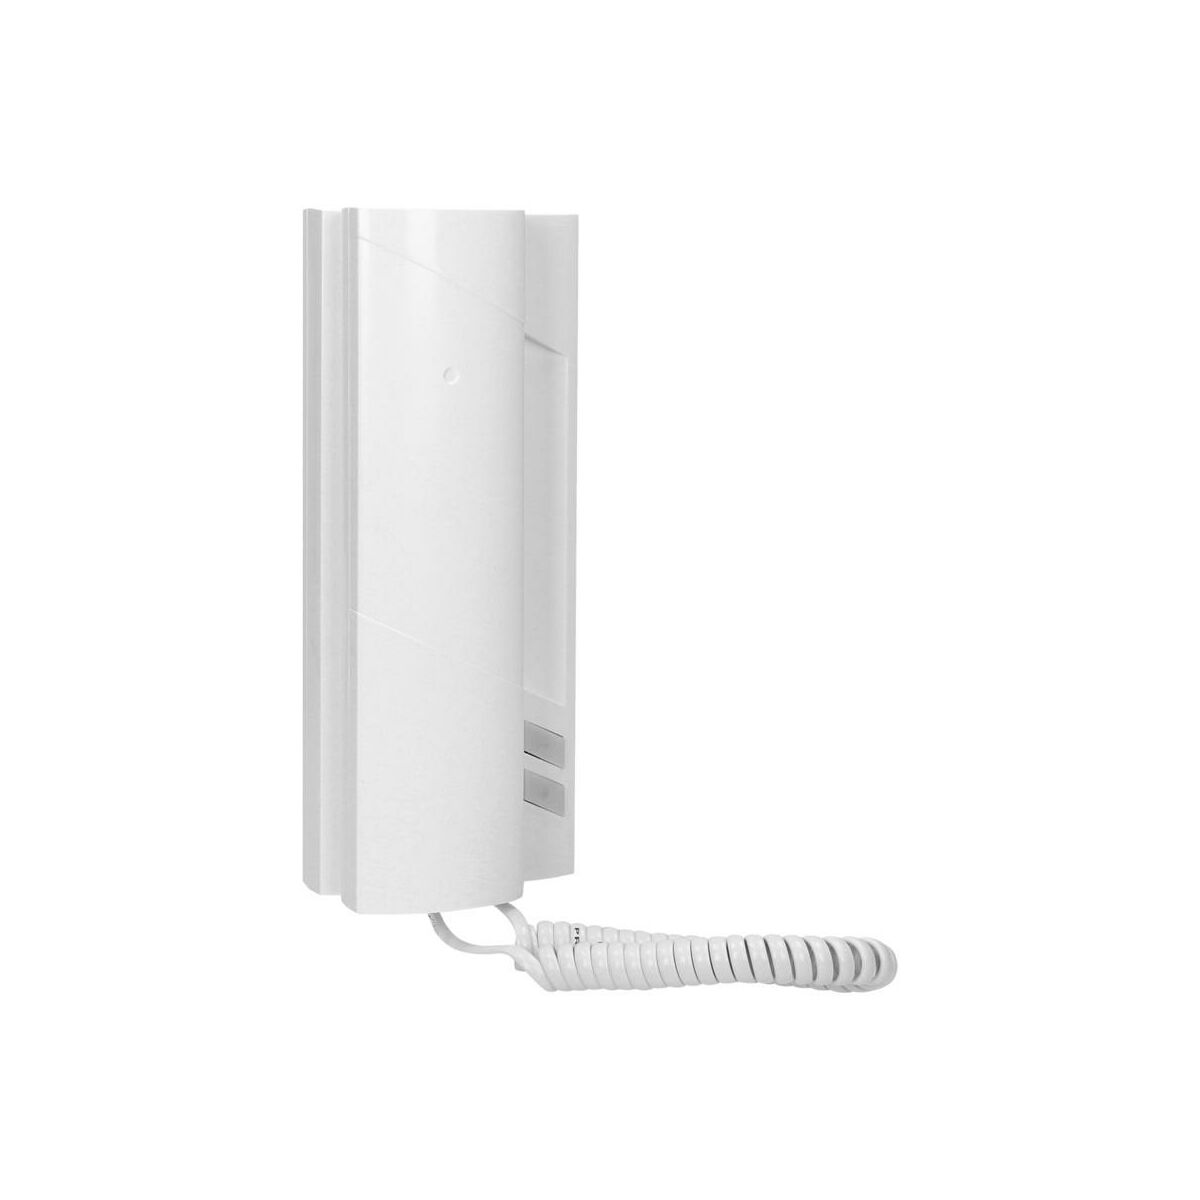 Orno Unifon wielolokatorski cyfrowy PROEL, biały OR PC-512